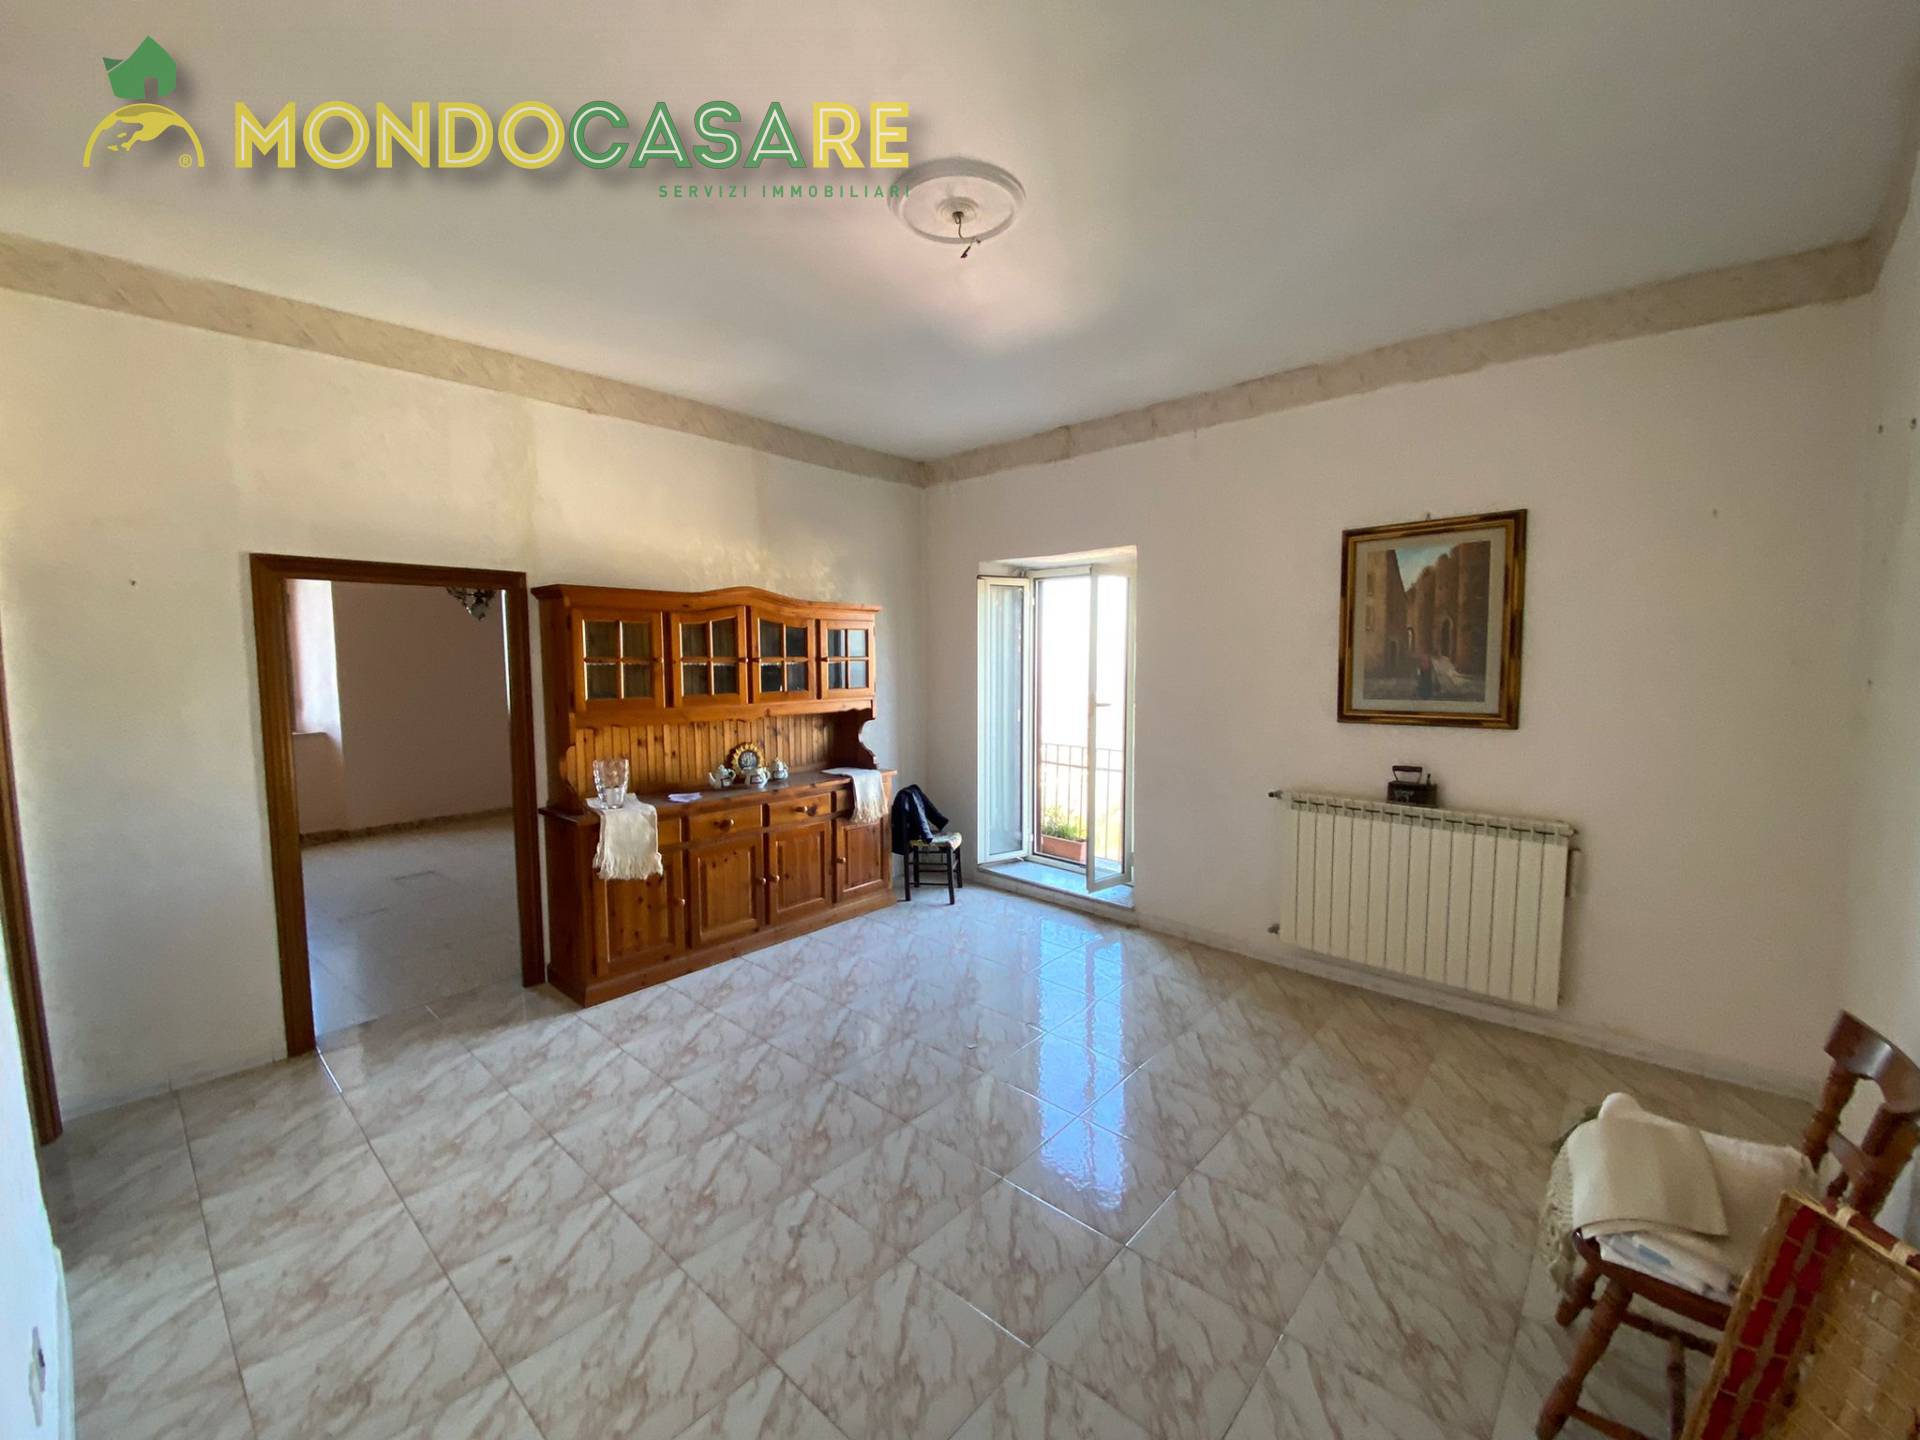 Appartamento in vendita a Palombara Sabina, 4 locali, prezzo € 64.000 | CambioCasa.it